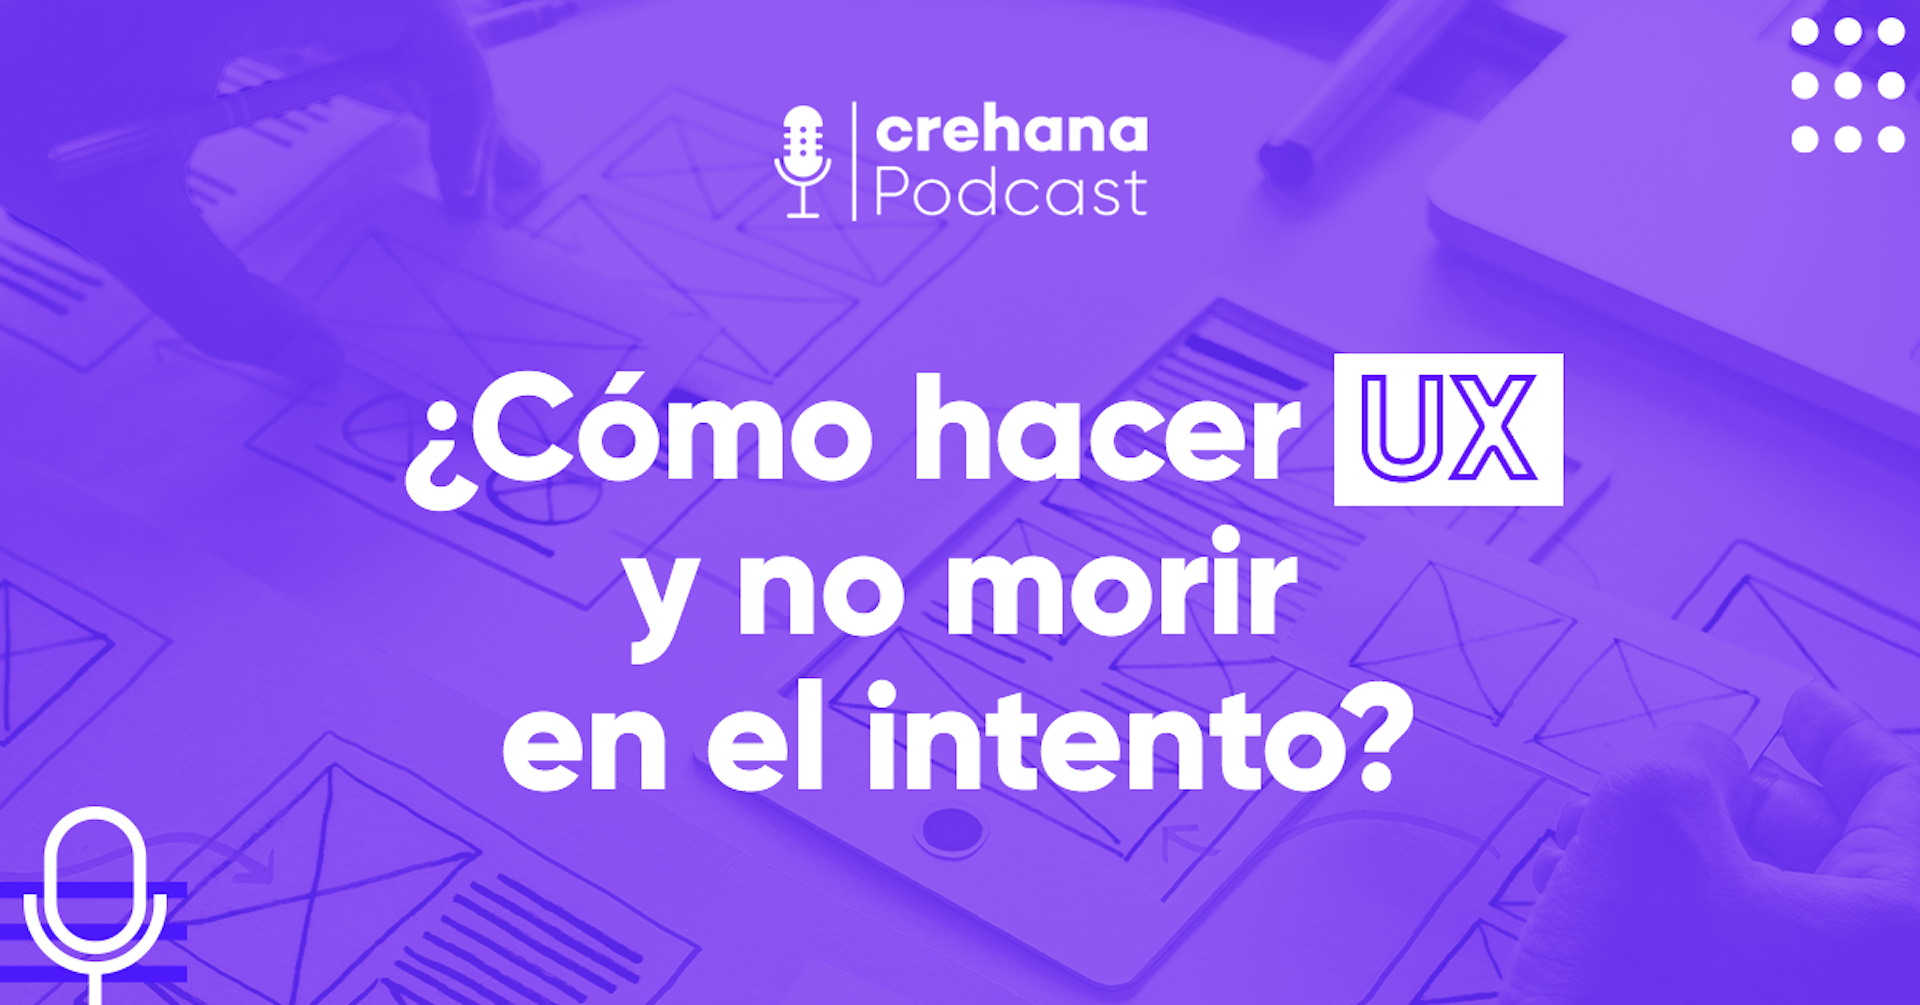 Crehana Podcast: ¿Cómo hacer UX y no morir en el intento?